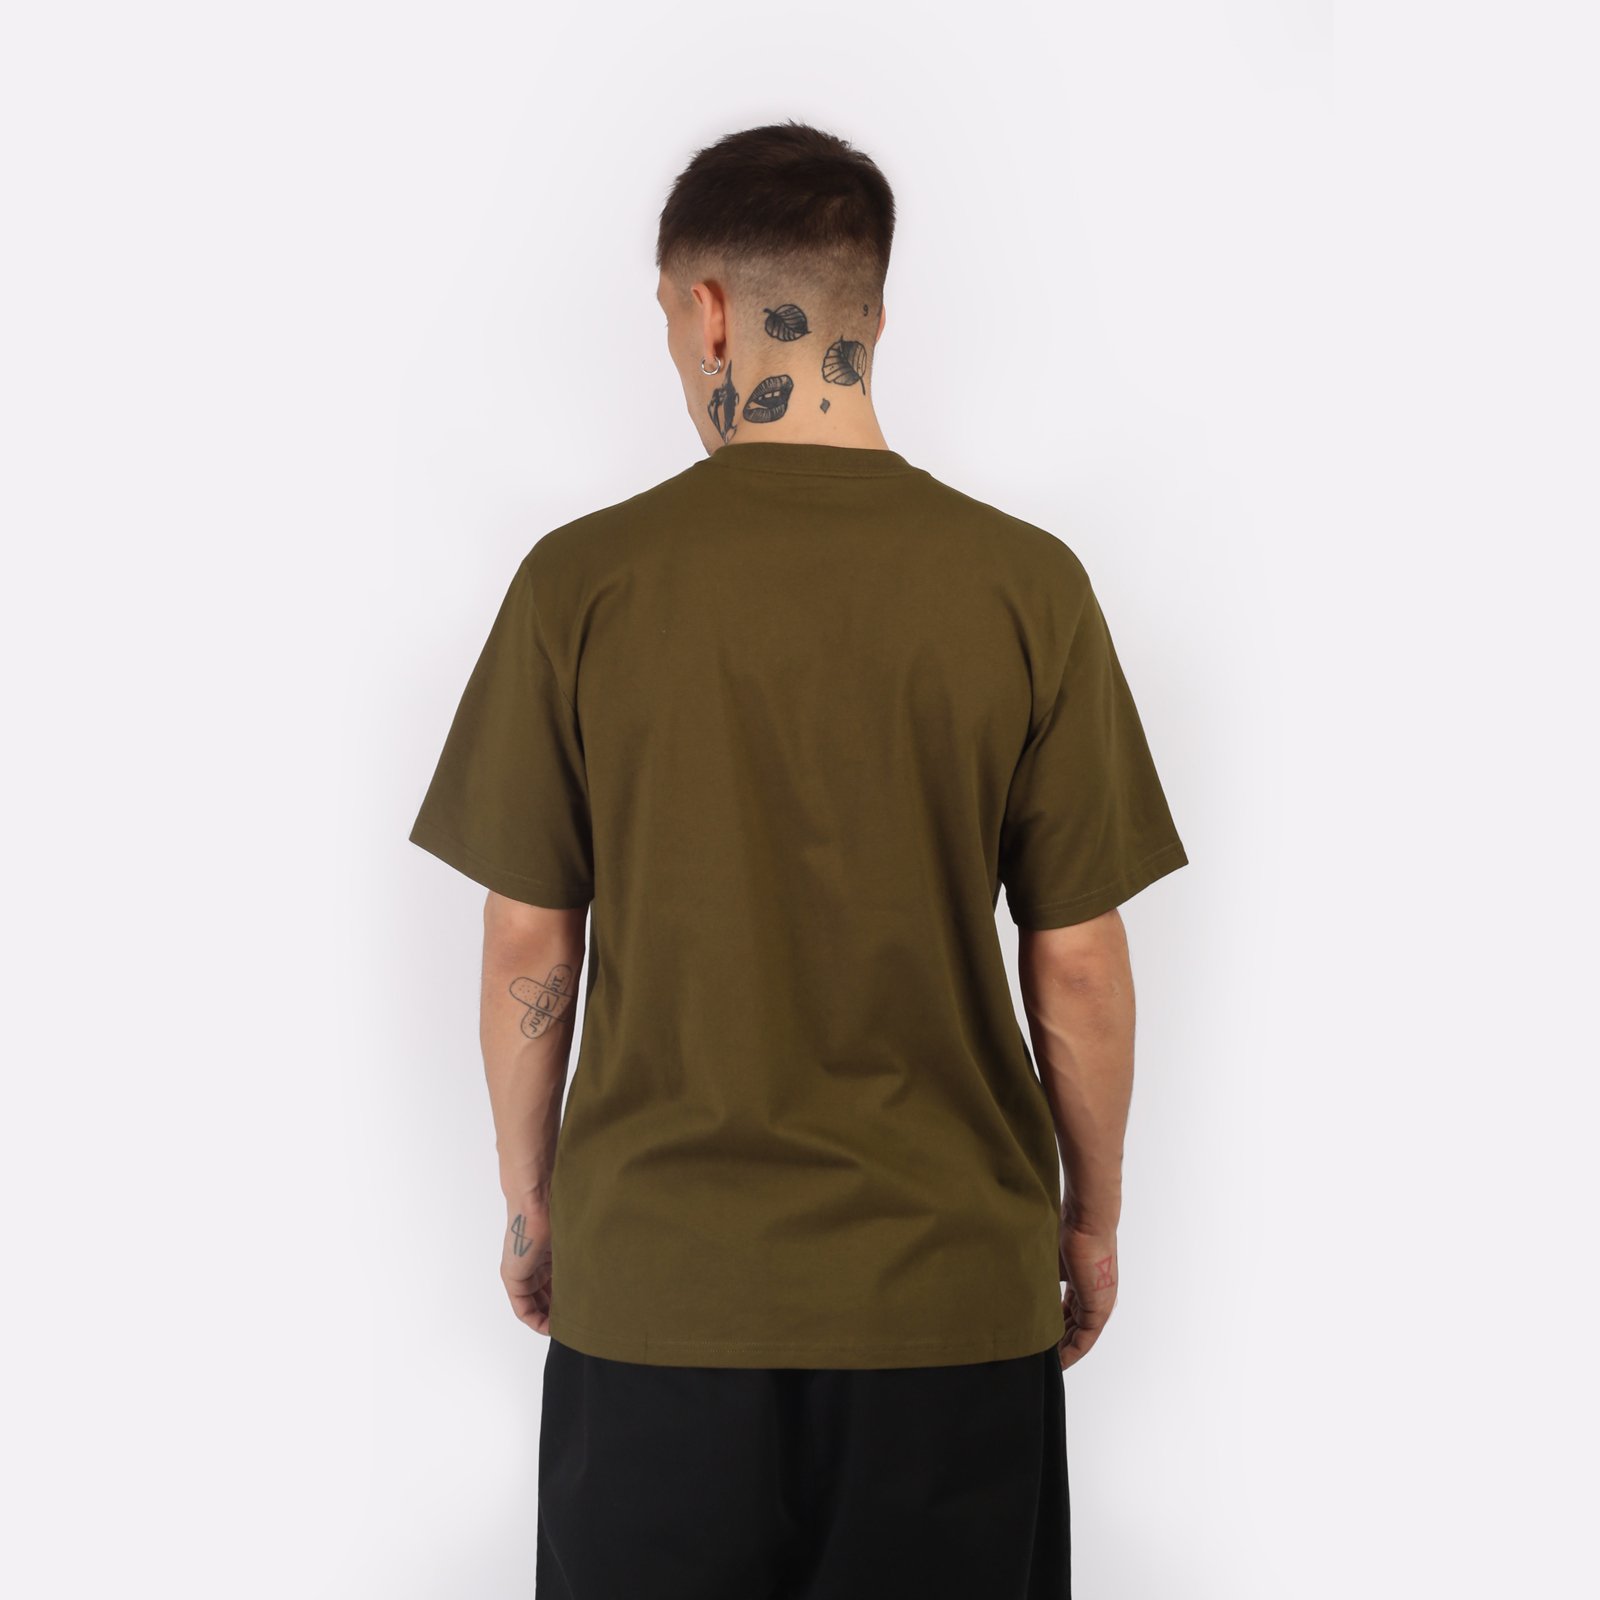 мужская футболка Carhartt WIP S/S University T-Shirt  (I028990-lumber/white)  - цена, описание, фото 2